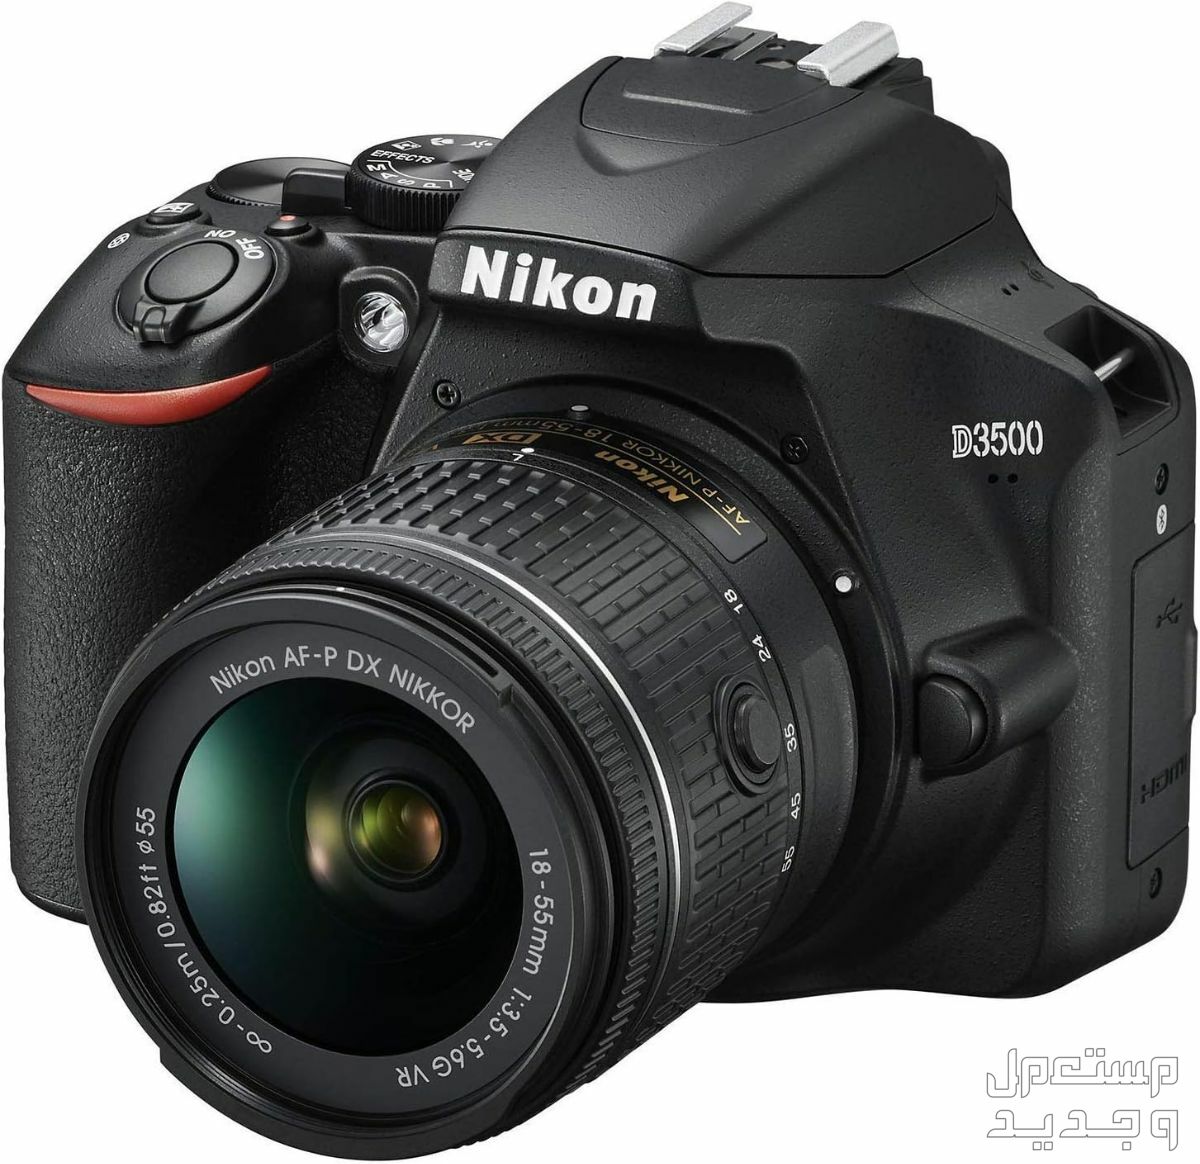 10 كاميرات تصوير ماركات عالمية بأسعار رخيصة في السودان مميزات كاميرا Nikon D3500